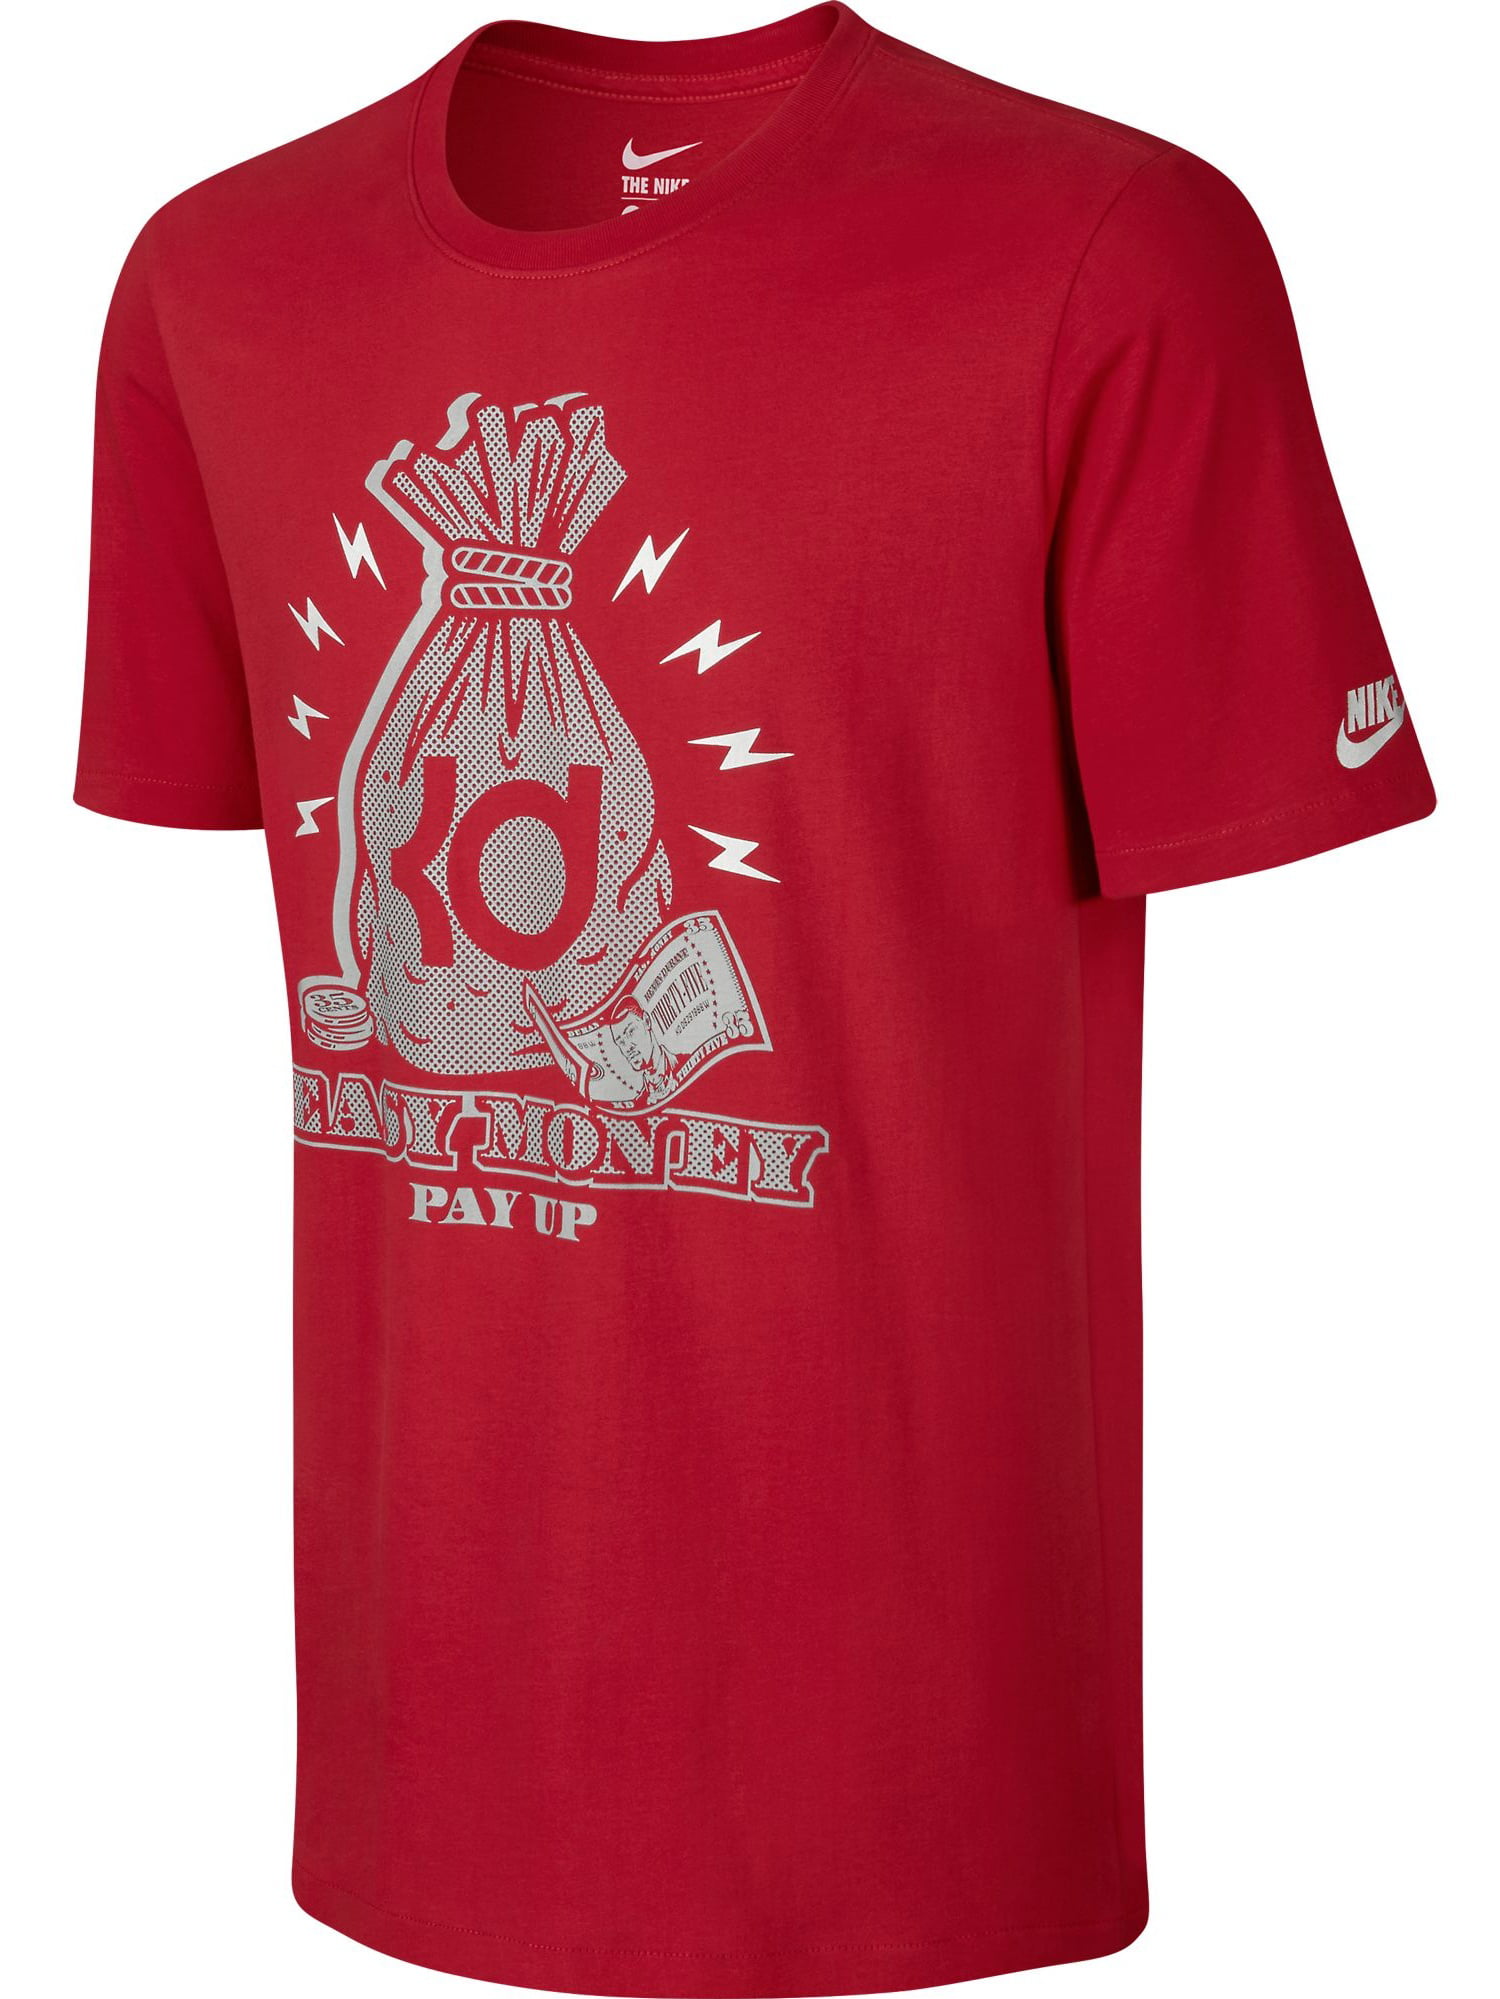 Nike KD Easy Money Men's T-Shirt Red/White 689186-657 - Walmart.com